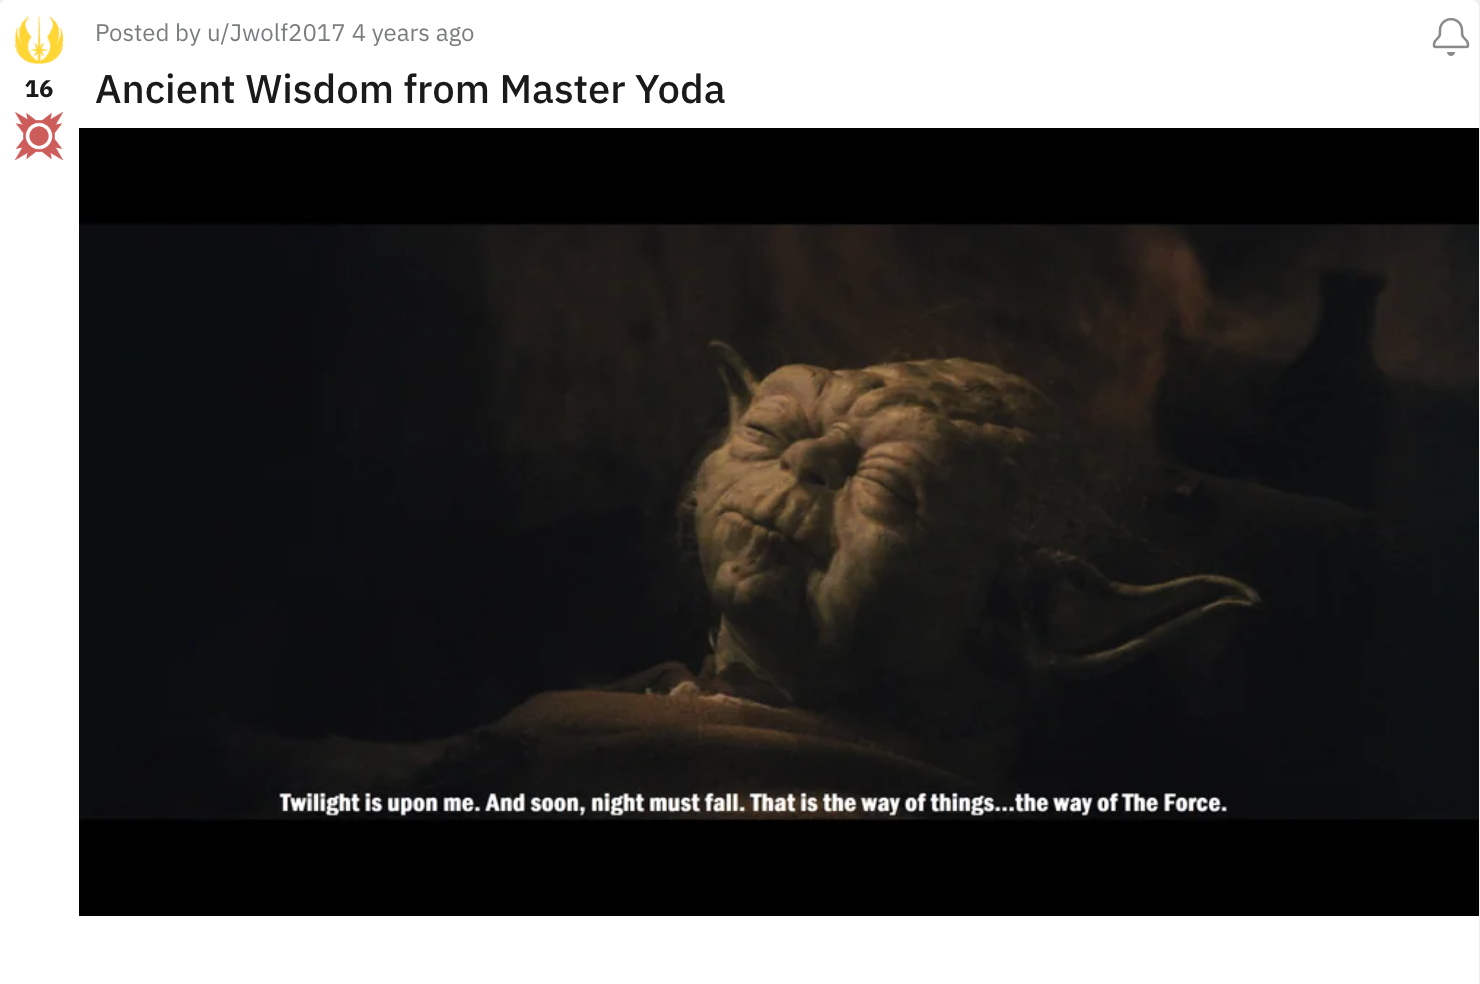 yoda twilight wisdom